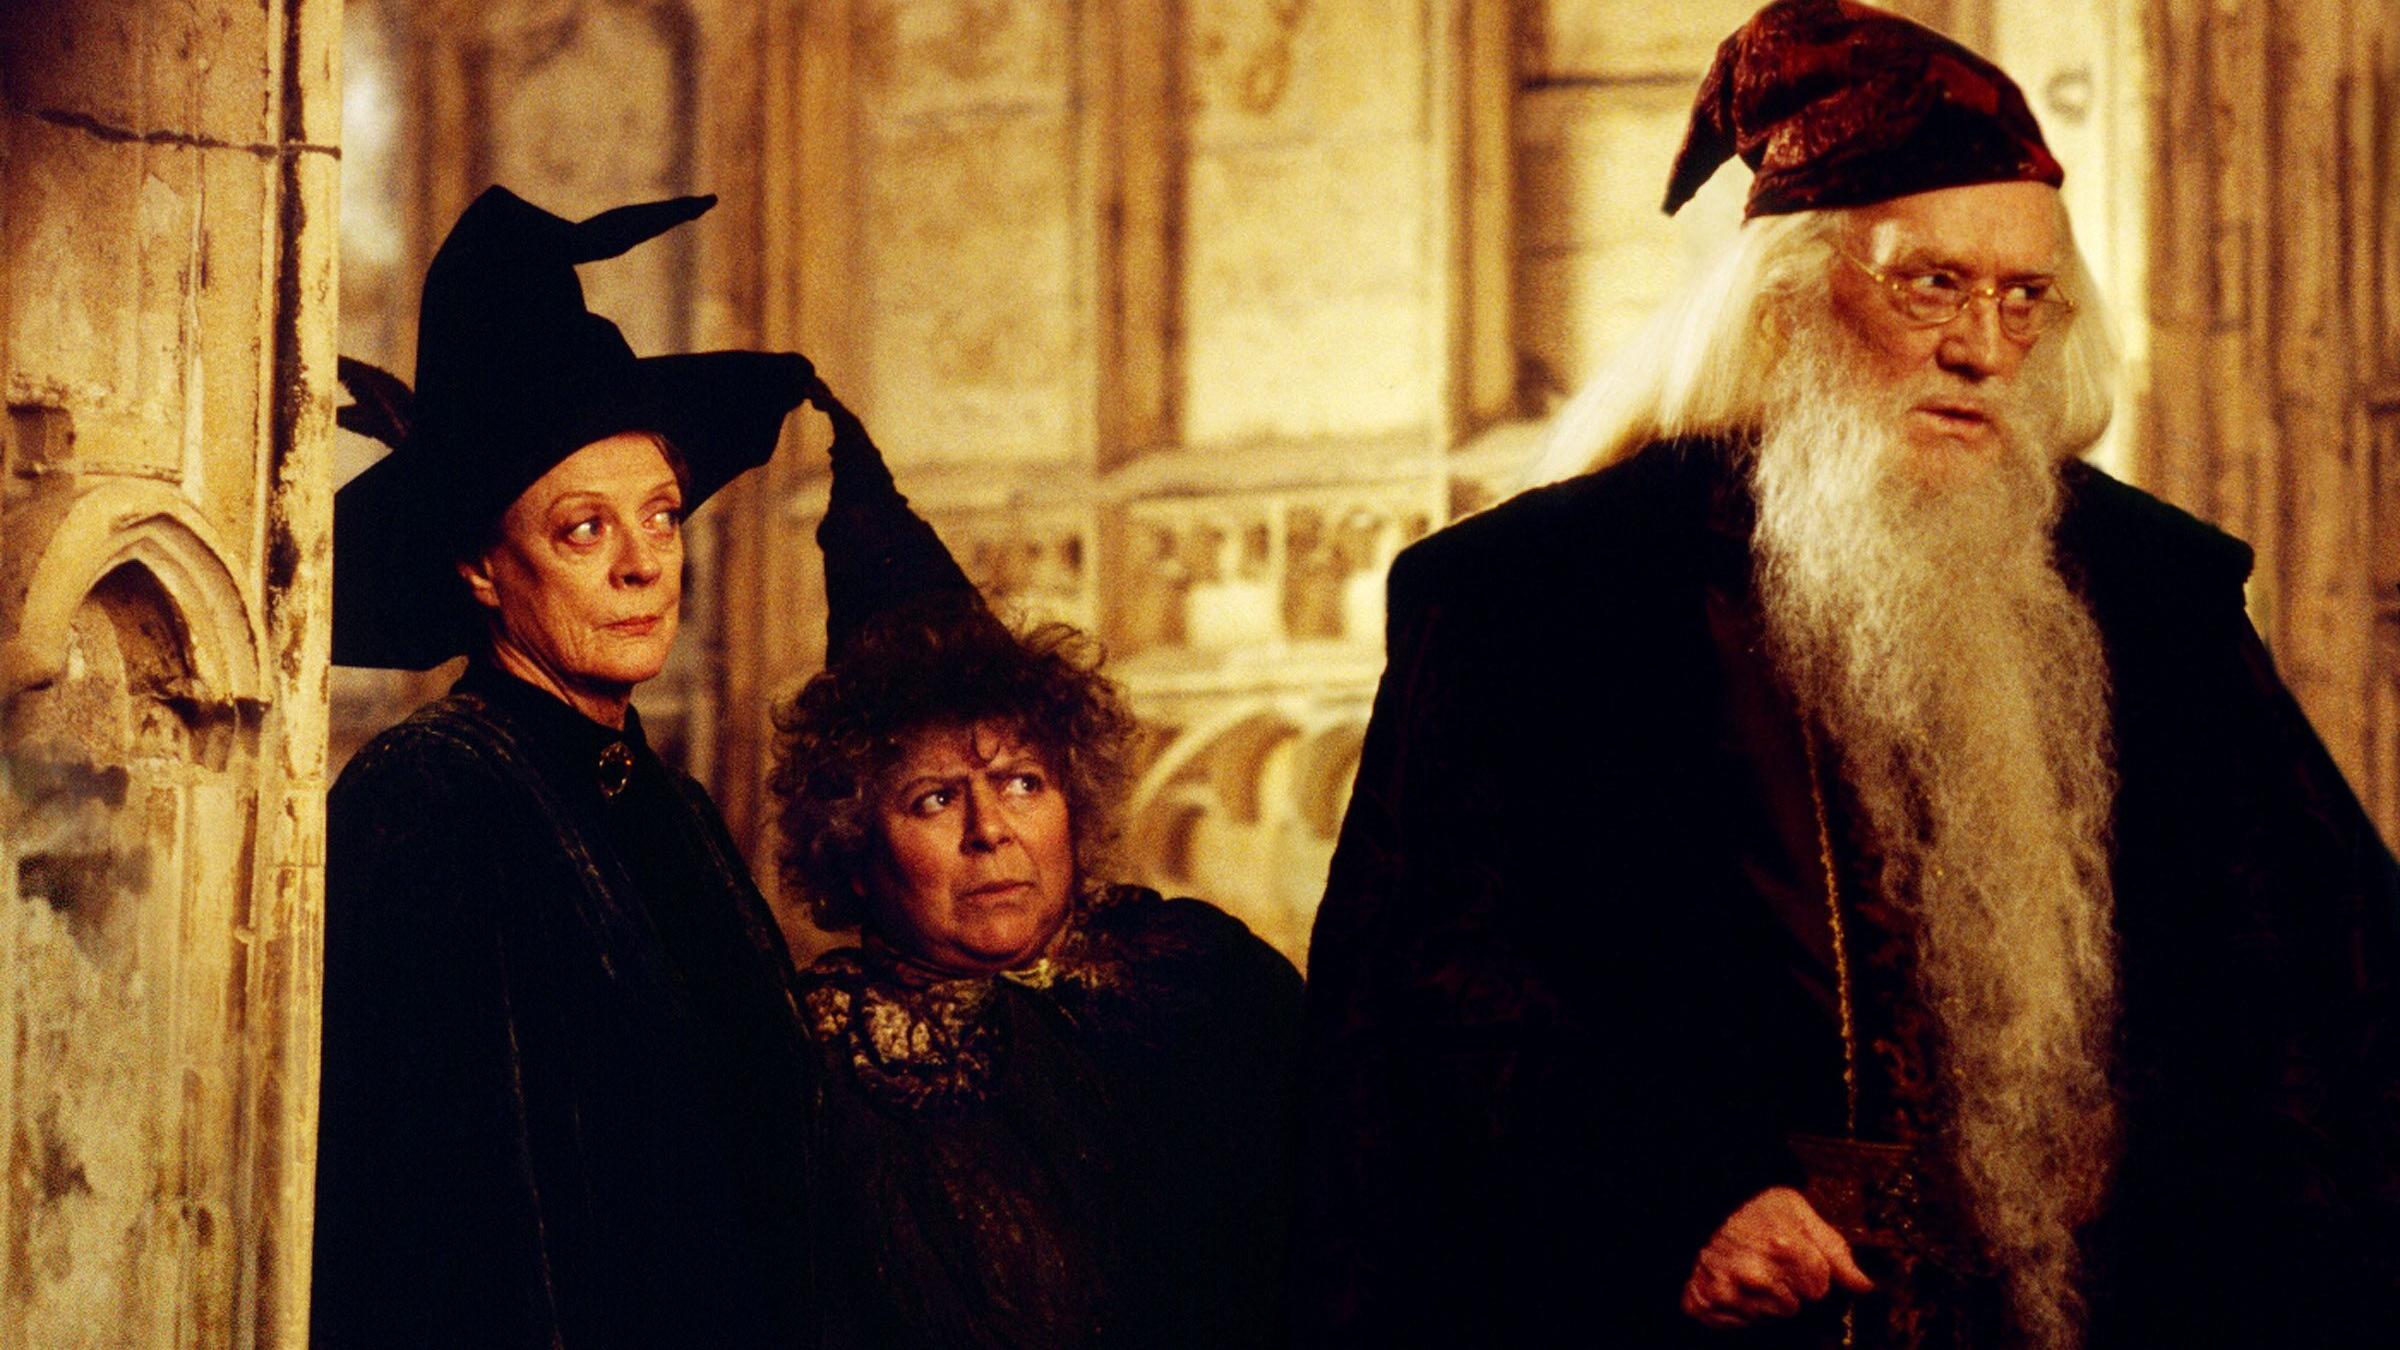 Miriam (mittig) in "Harry Potter und die Kammer des Schreckens"